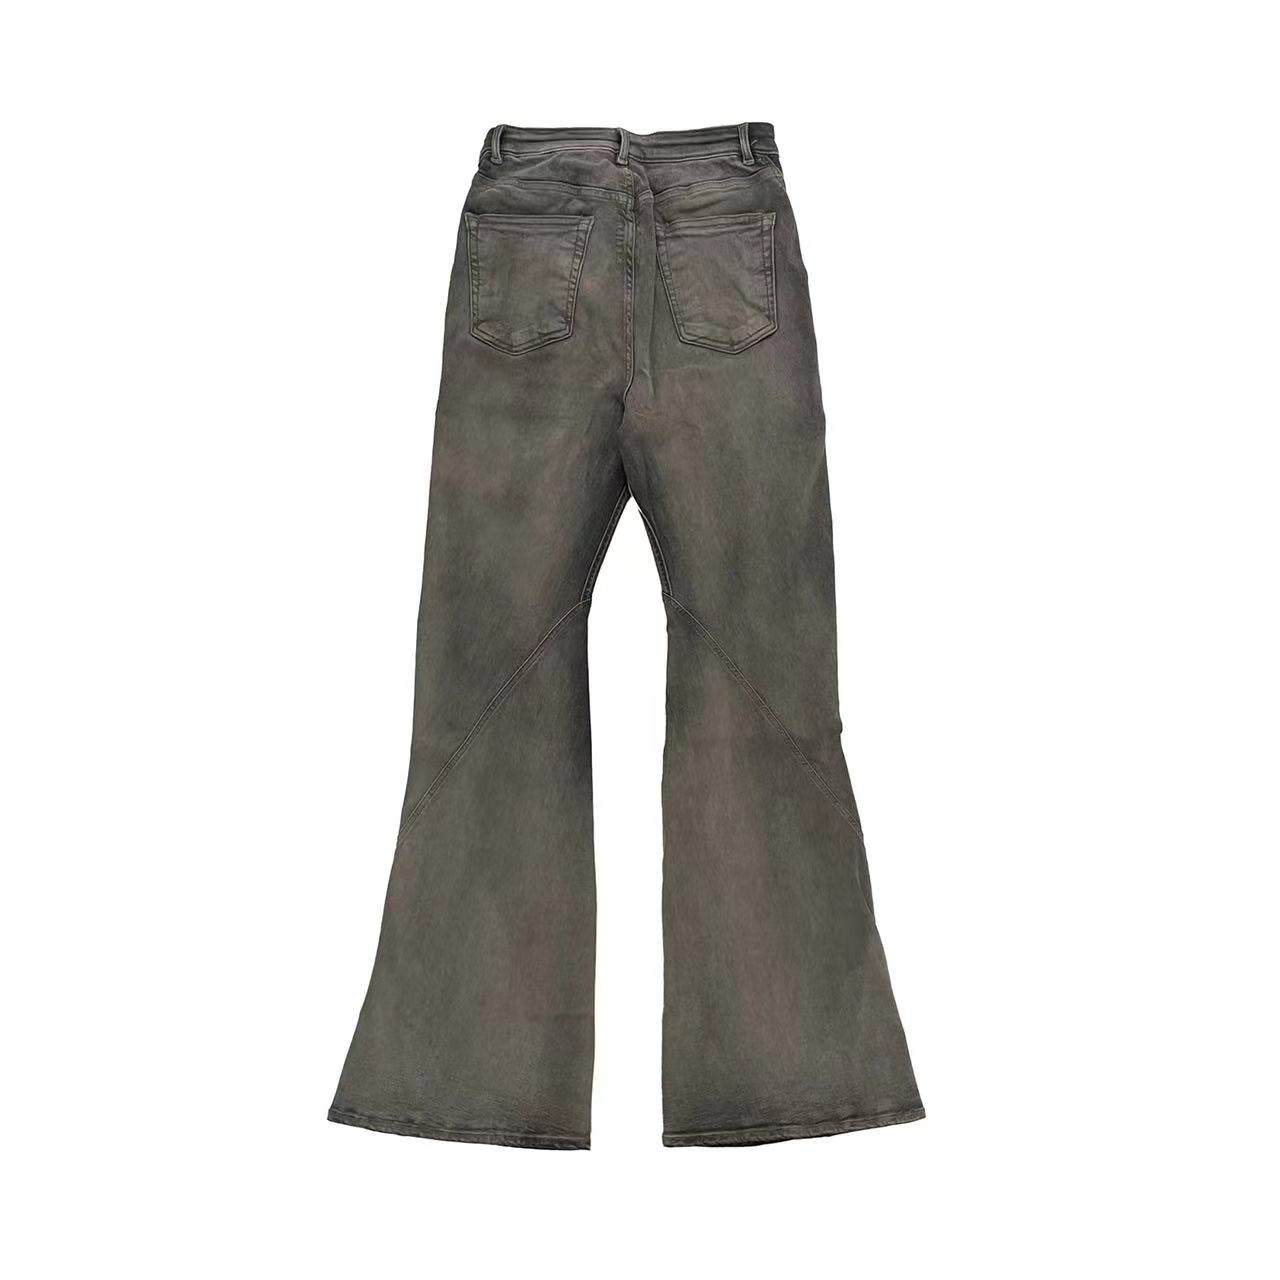 RICK OWENS DRKSHDW Bias Bootcut Jeans - SHENGLI ROAD MARKET